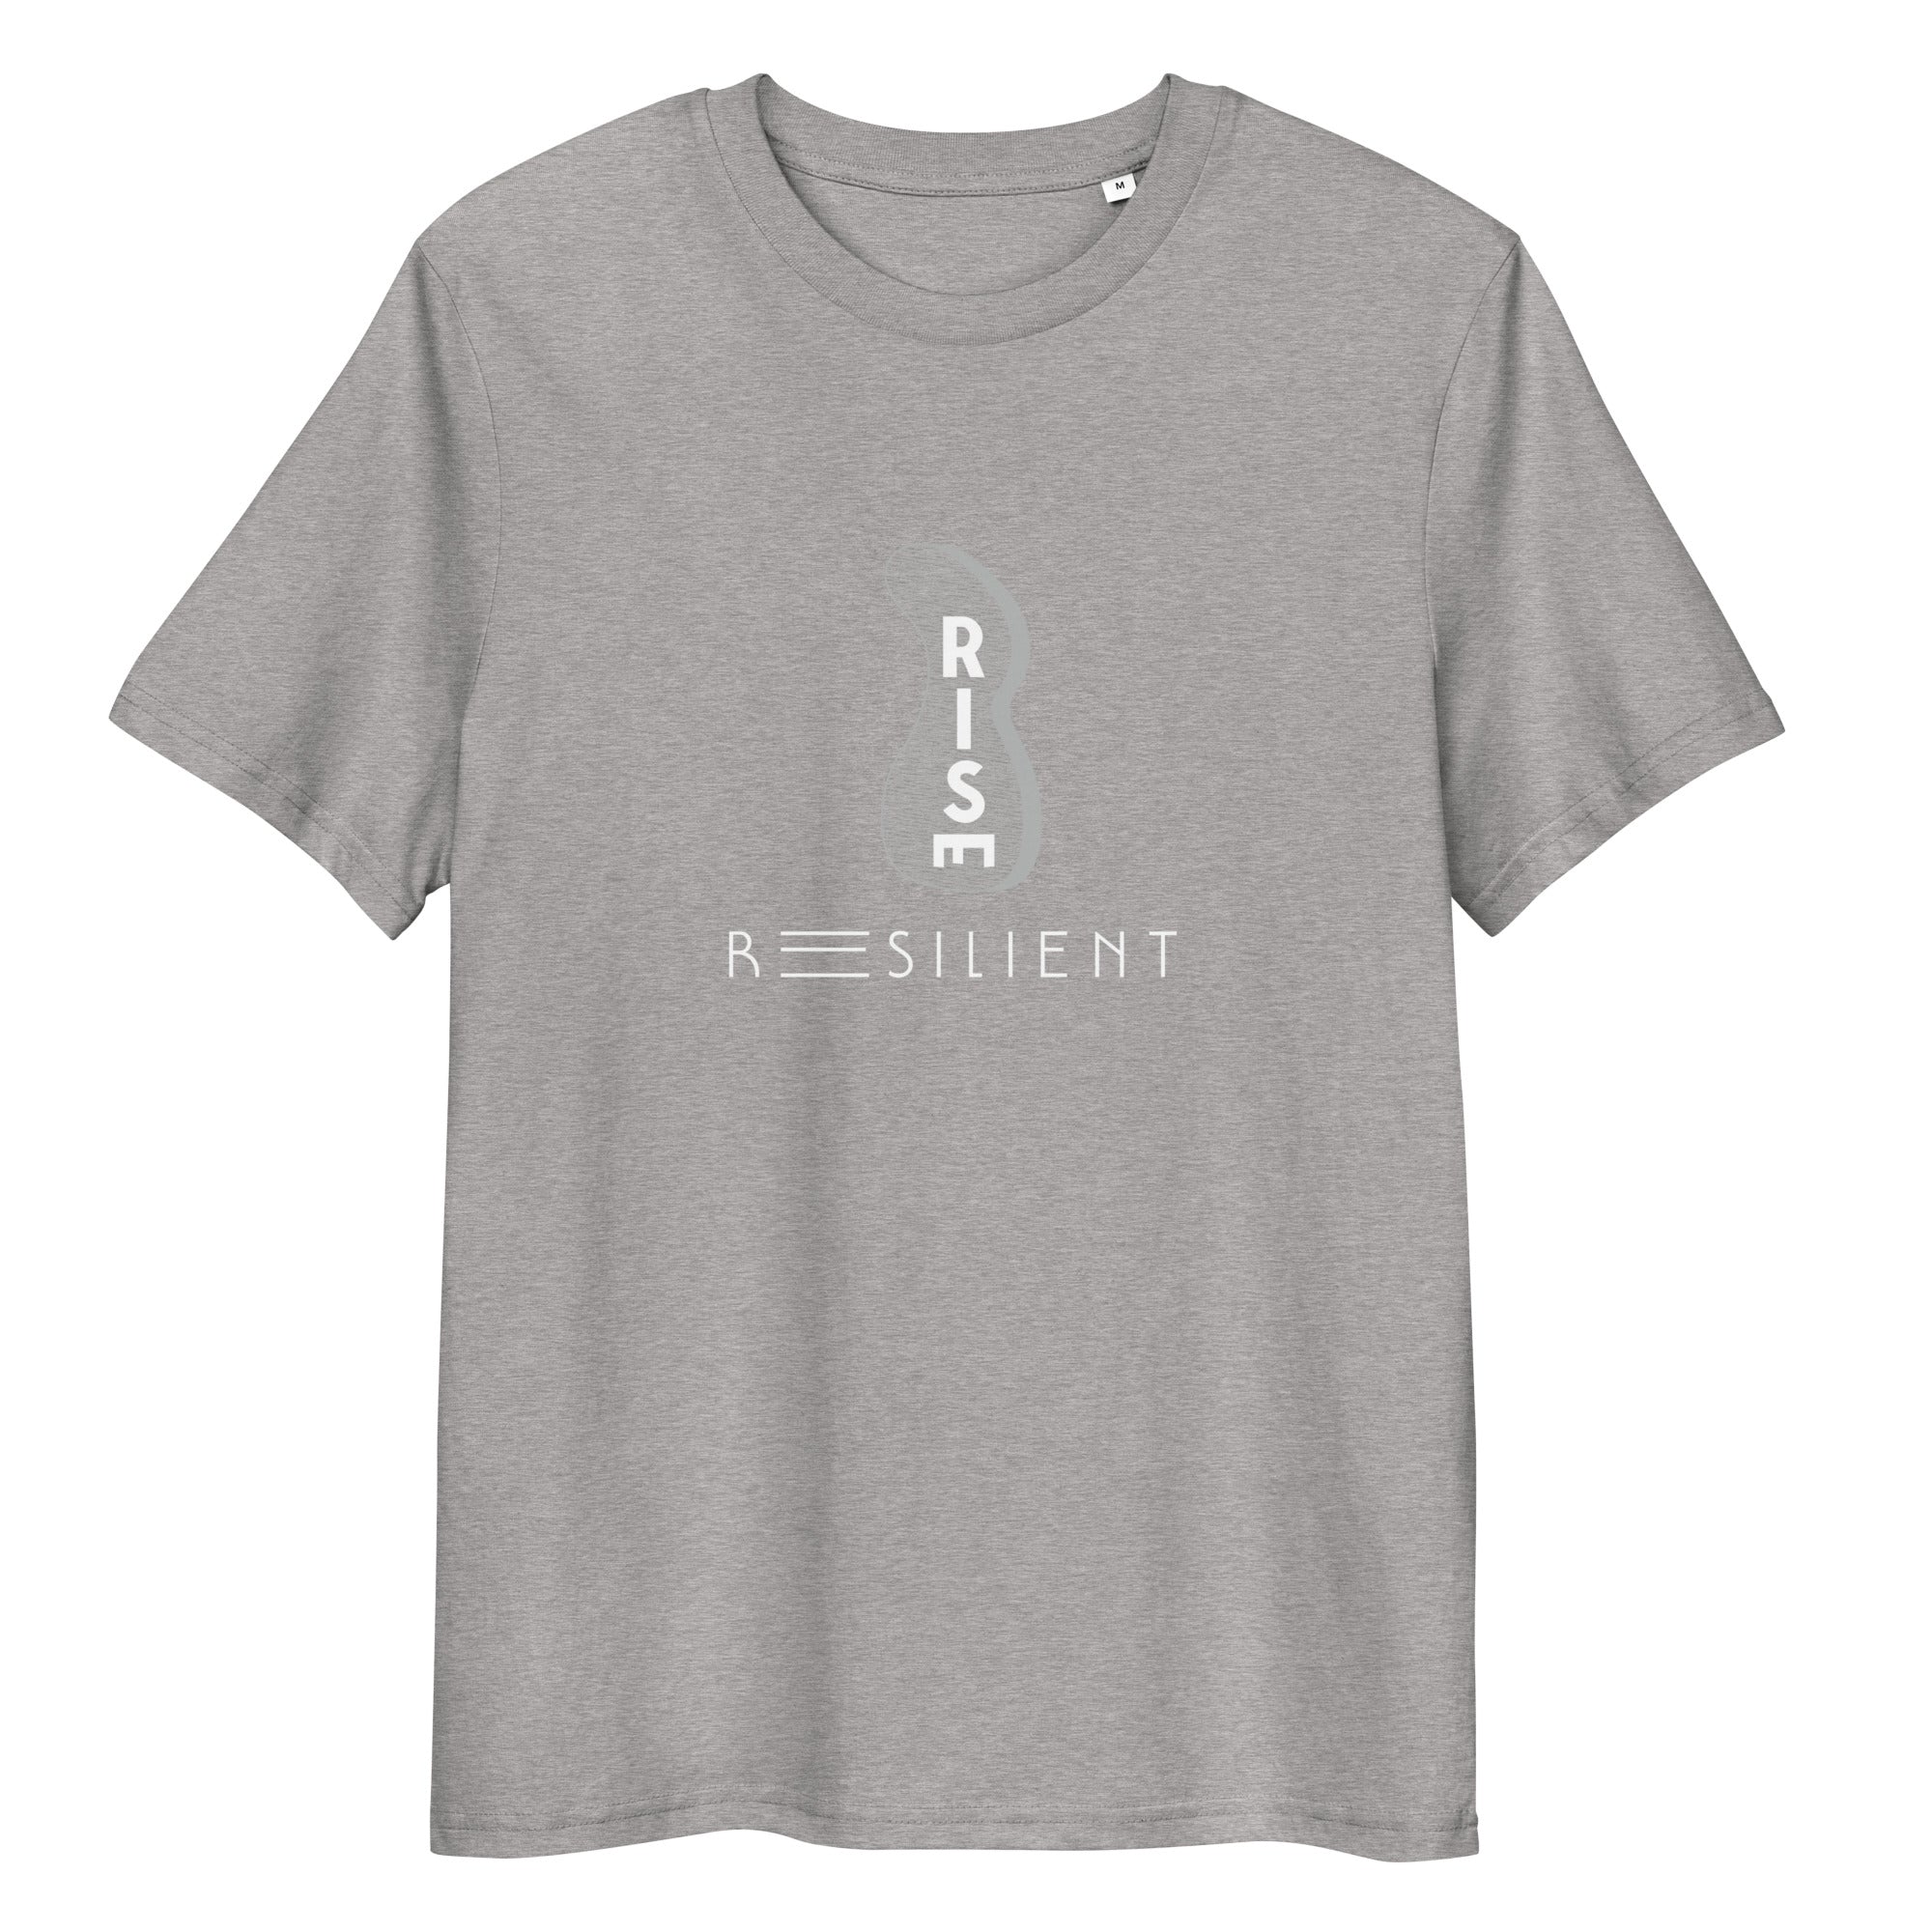 Resilient Unisex organic cotton t-shirt